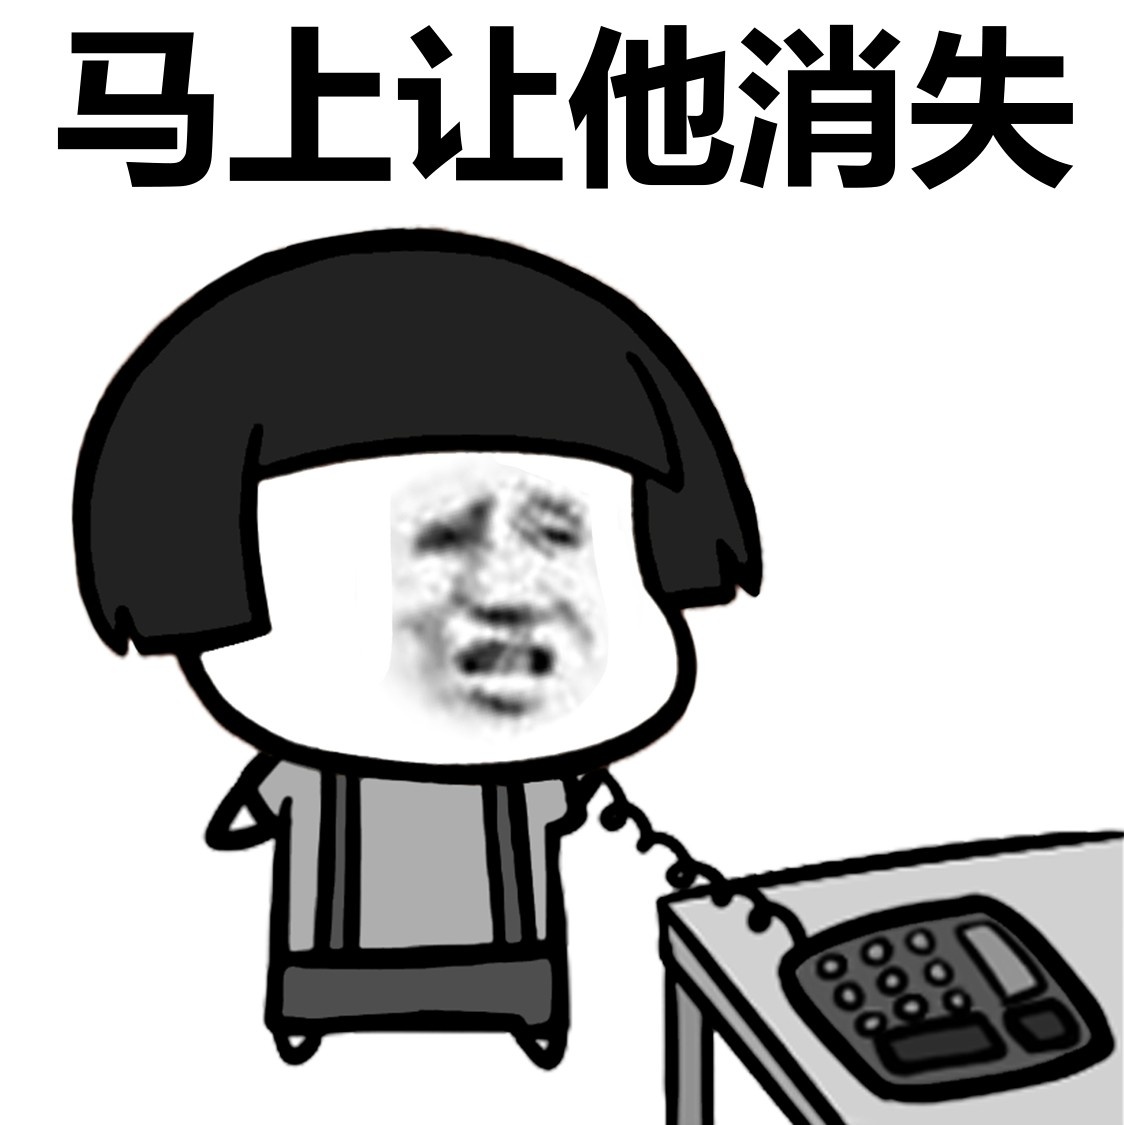 蘑菇头 - 斗图大会 - 蘑菇头表情库 - 真正的斗图网站 - dou.yuanmazg.com